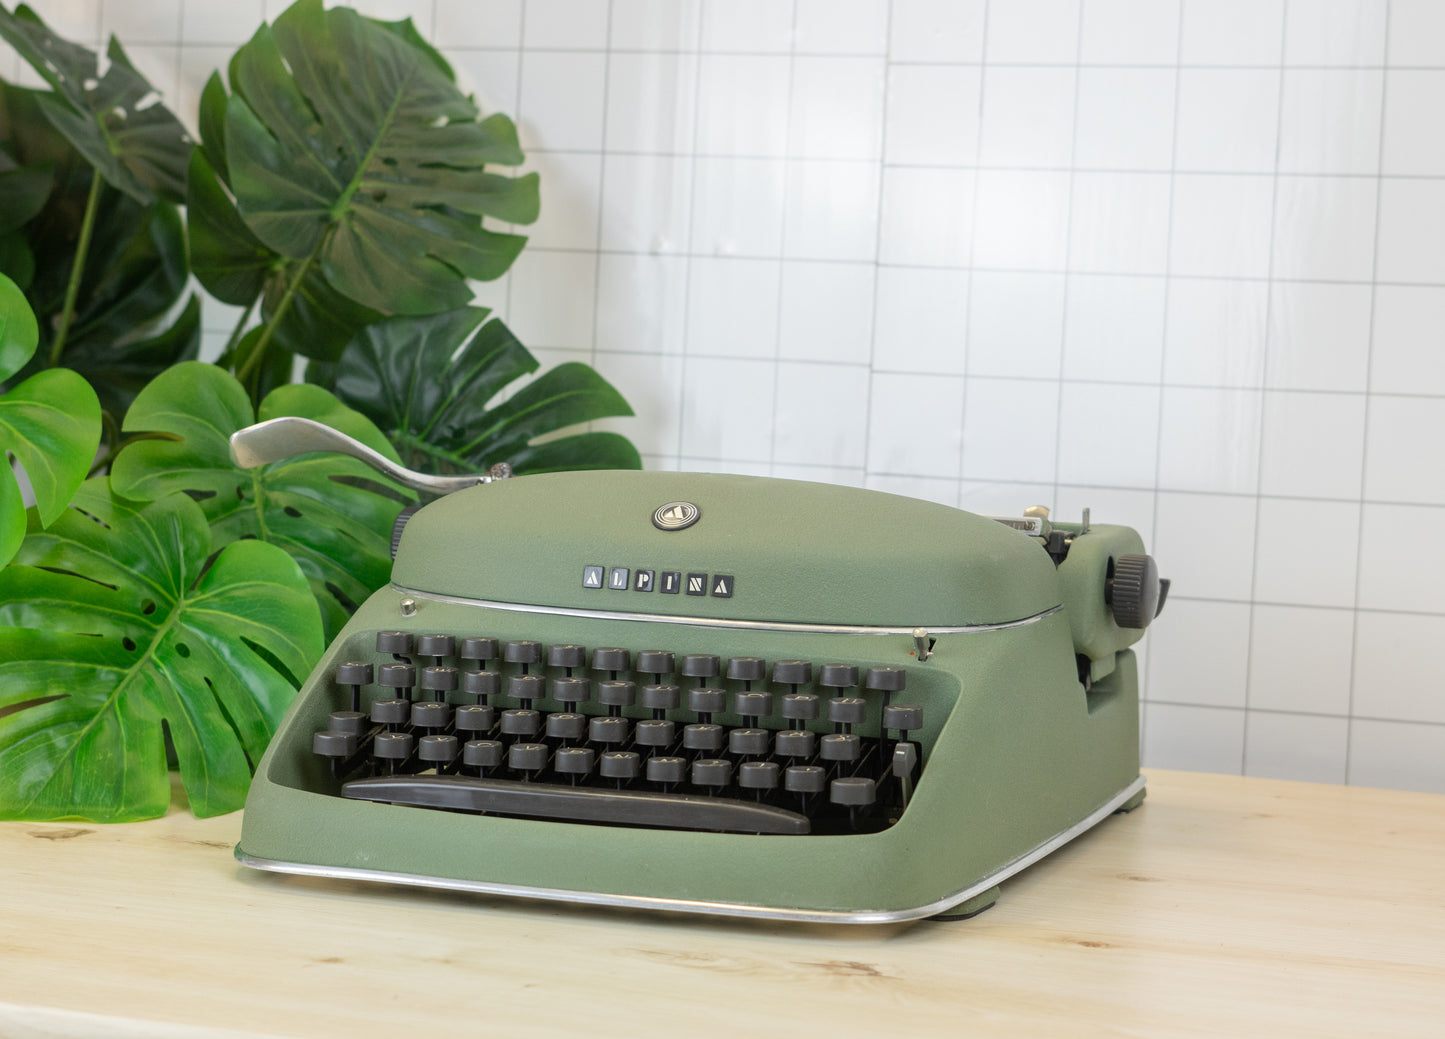 Alpina N24 typewriter